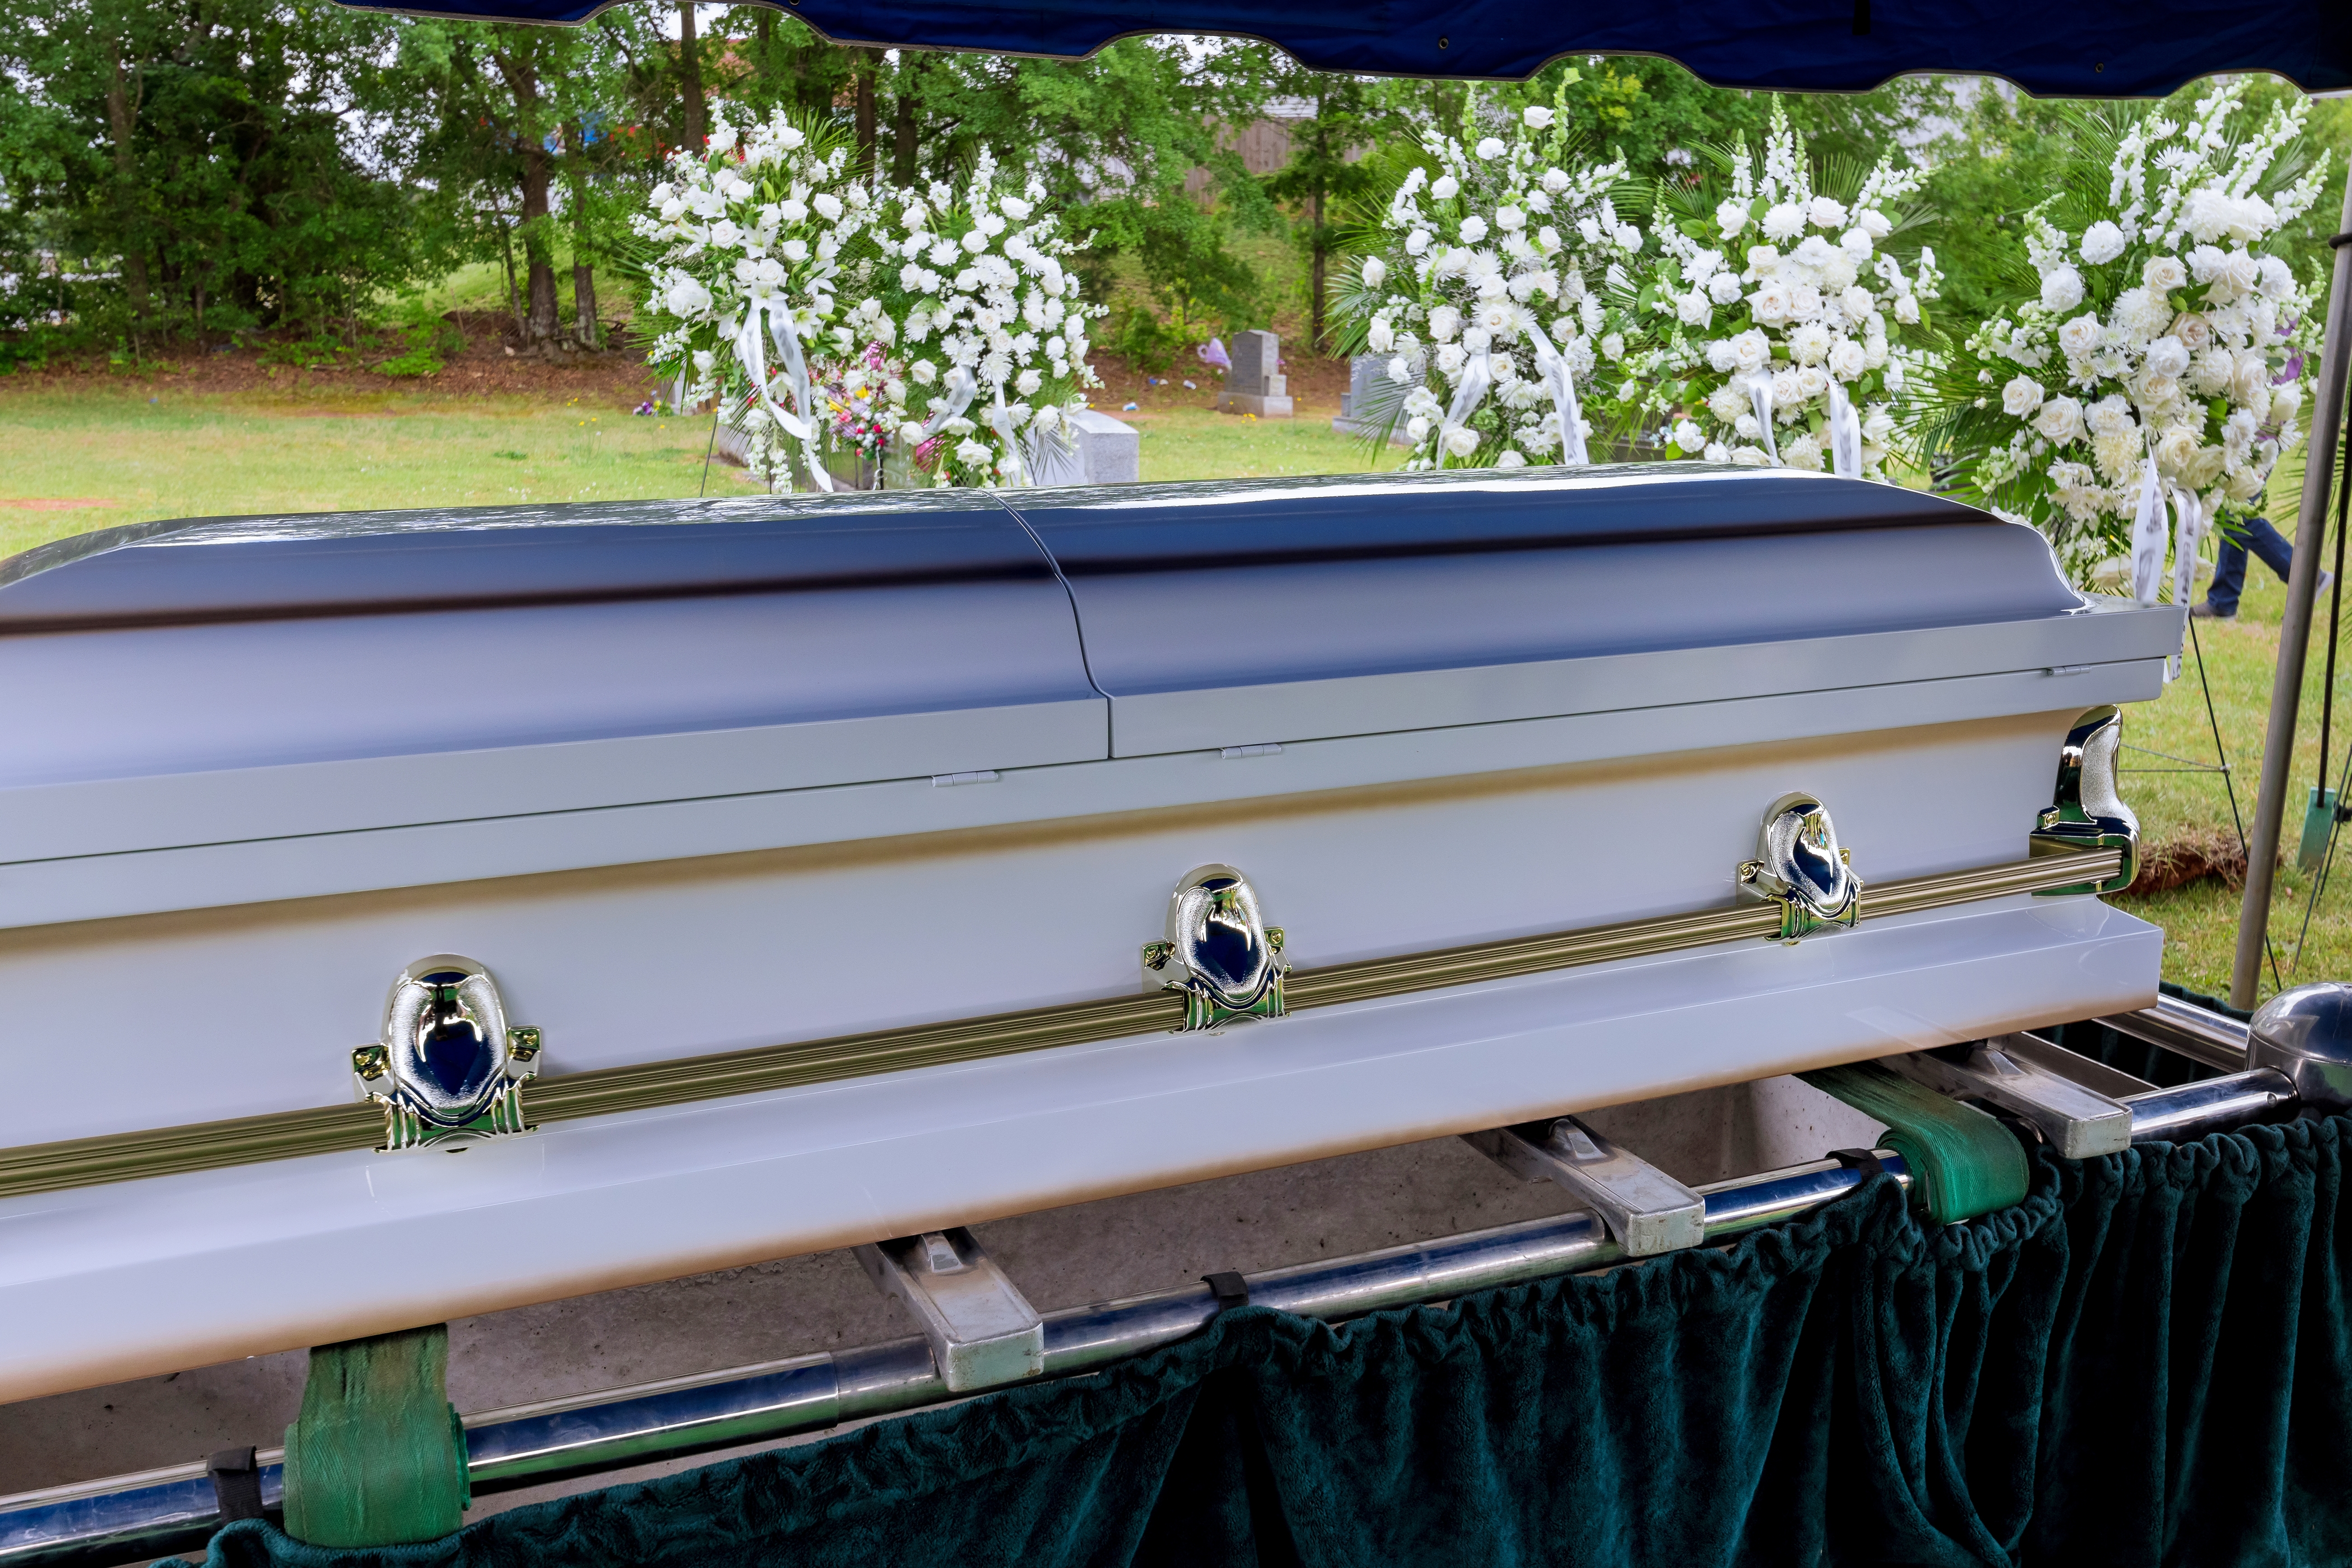 Un service funéraire a lieu dans un cimetière, suivi de la descente du cercueil dans la tombe par un ascenseur automatique | Source : Shutterstock